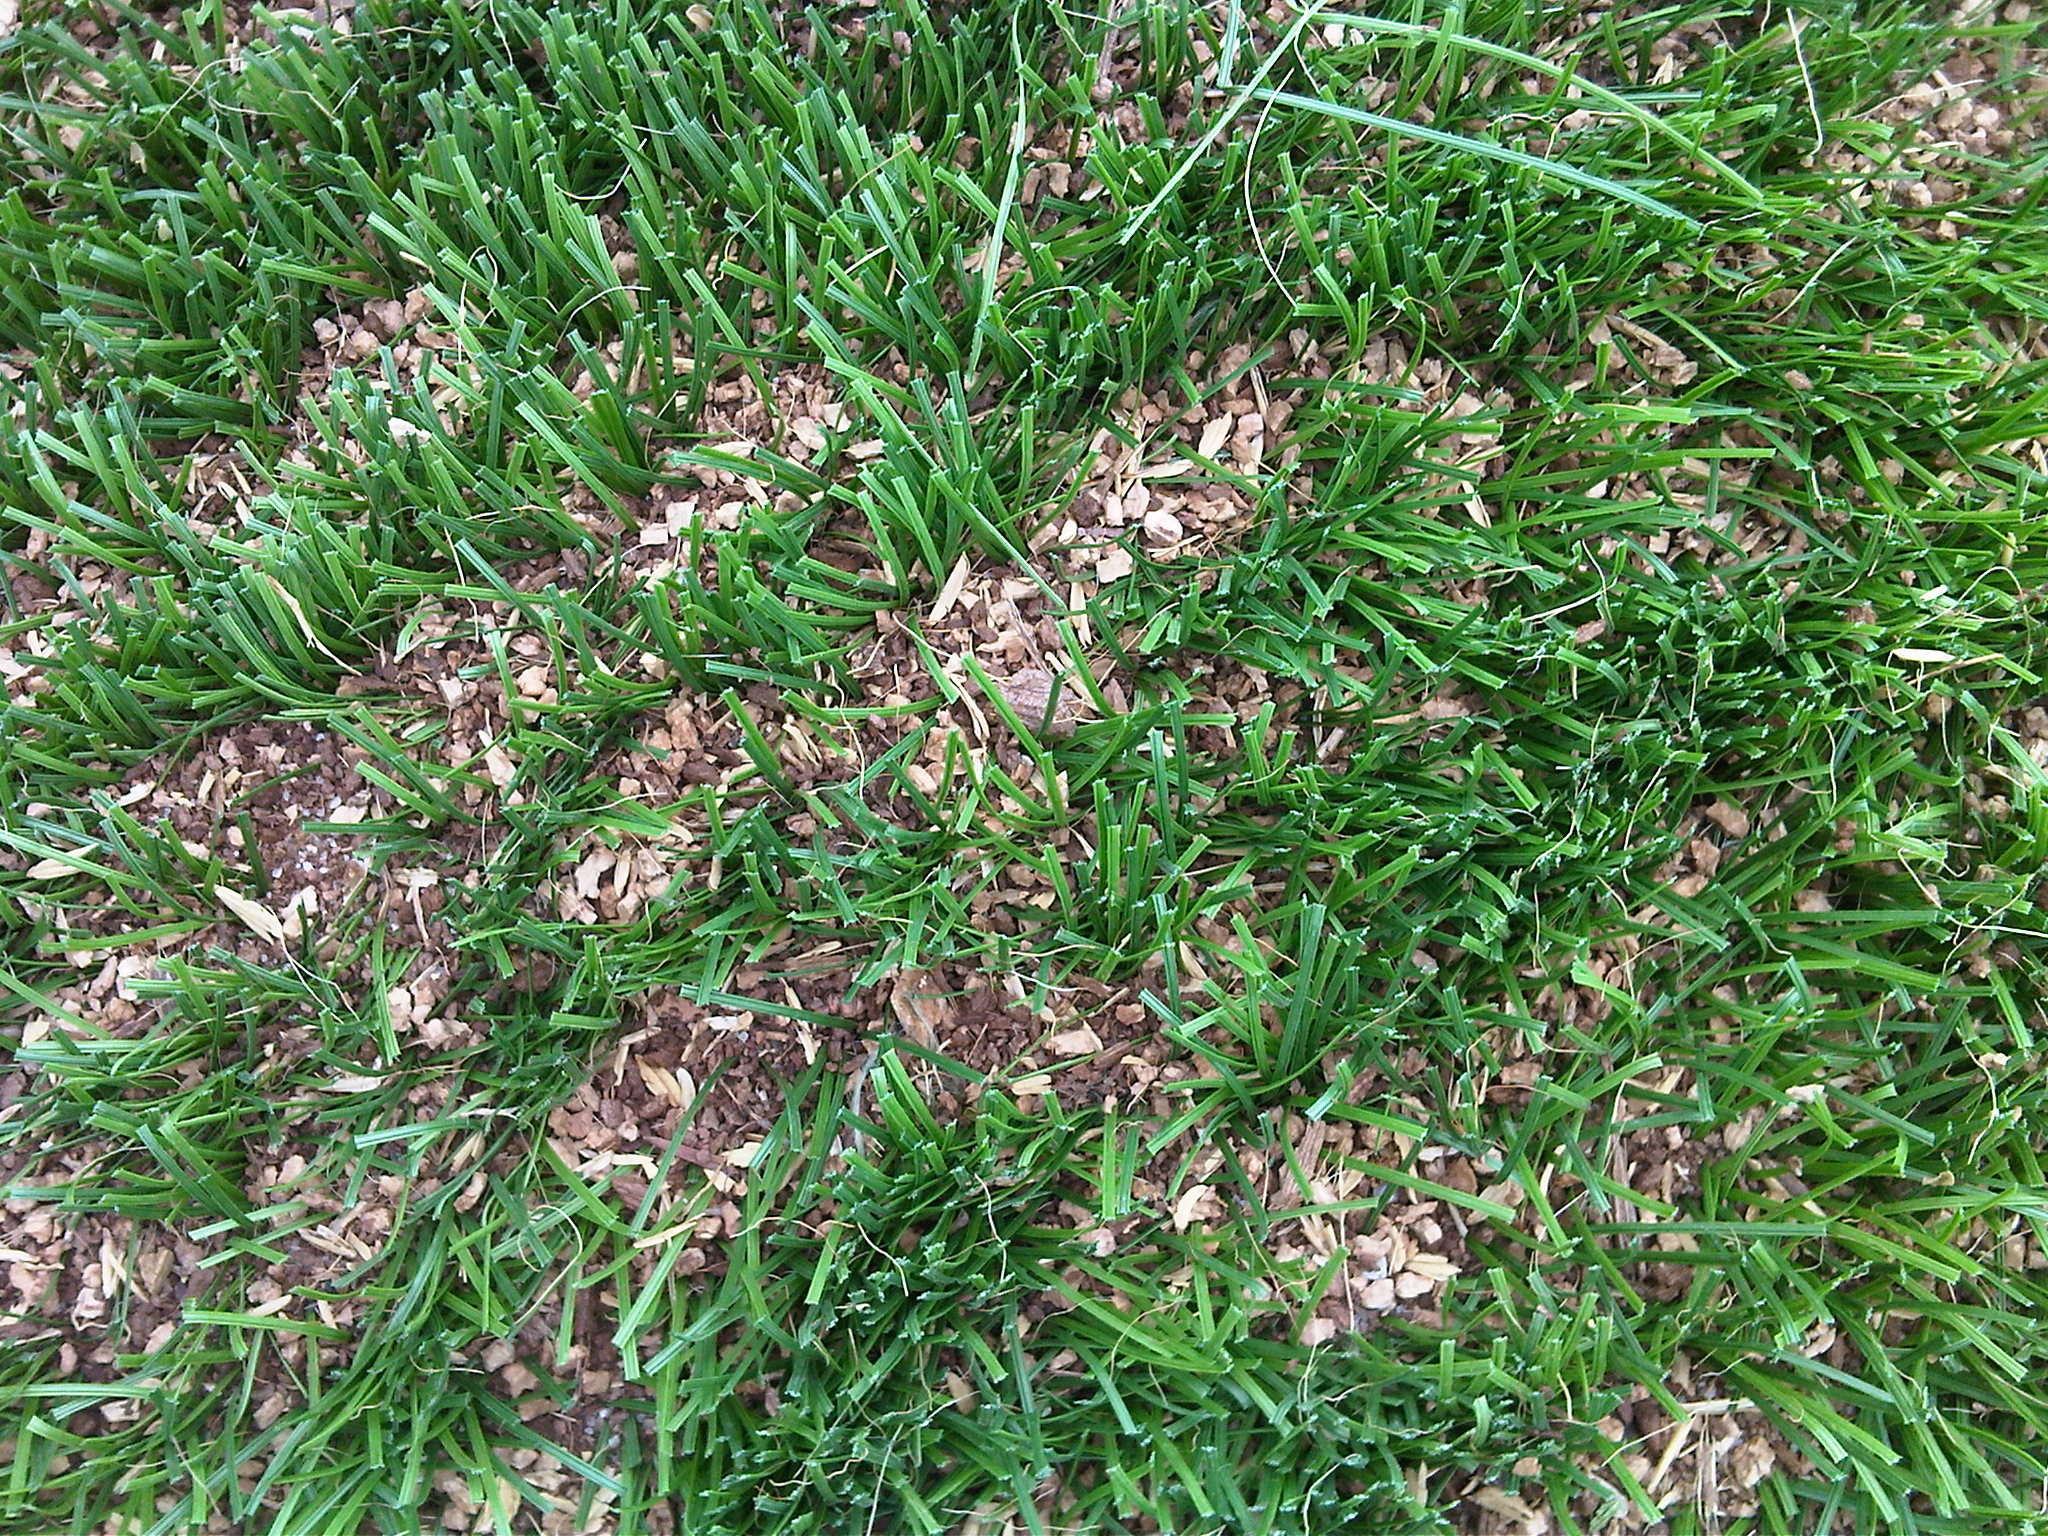 Campi da calcio in erba sintetica